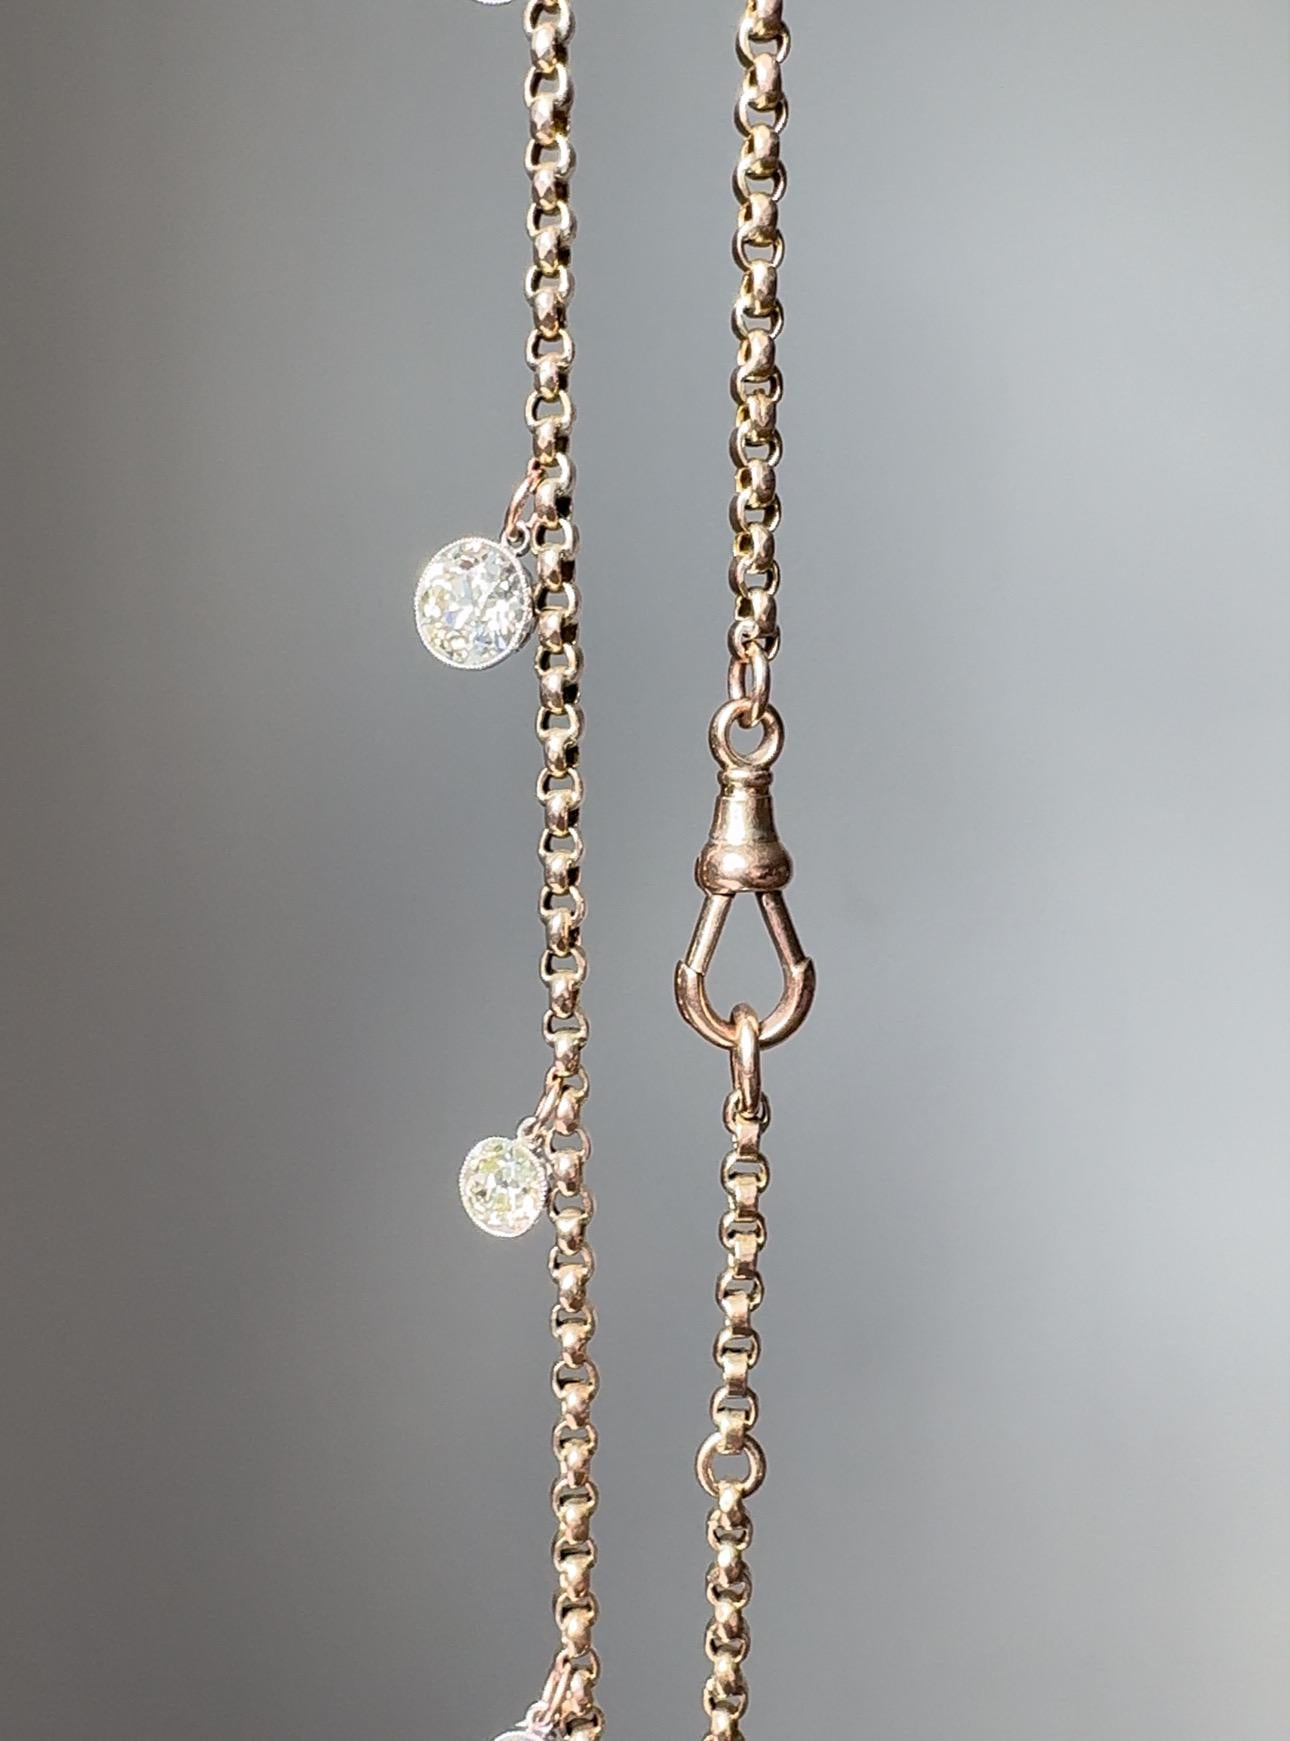 Dieses wunderbar tragbare, maßgeschneiderte Collier besteht aus einer abgestuften Reihe funkelnder Diamanten im europäischen Schliff mit einem Gesamtgewicht von 4,37 Karat, die in Platin gefasst sind und an einer viktorianischen Gliederkette aus 9